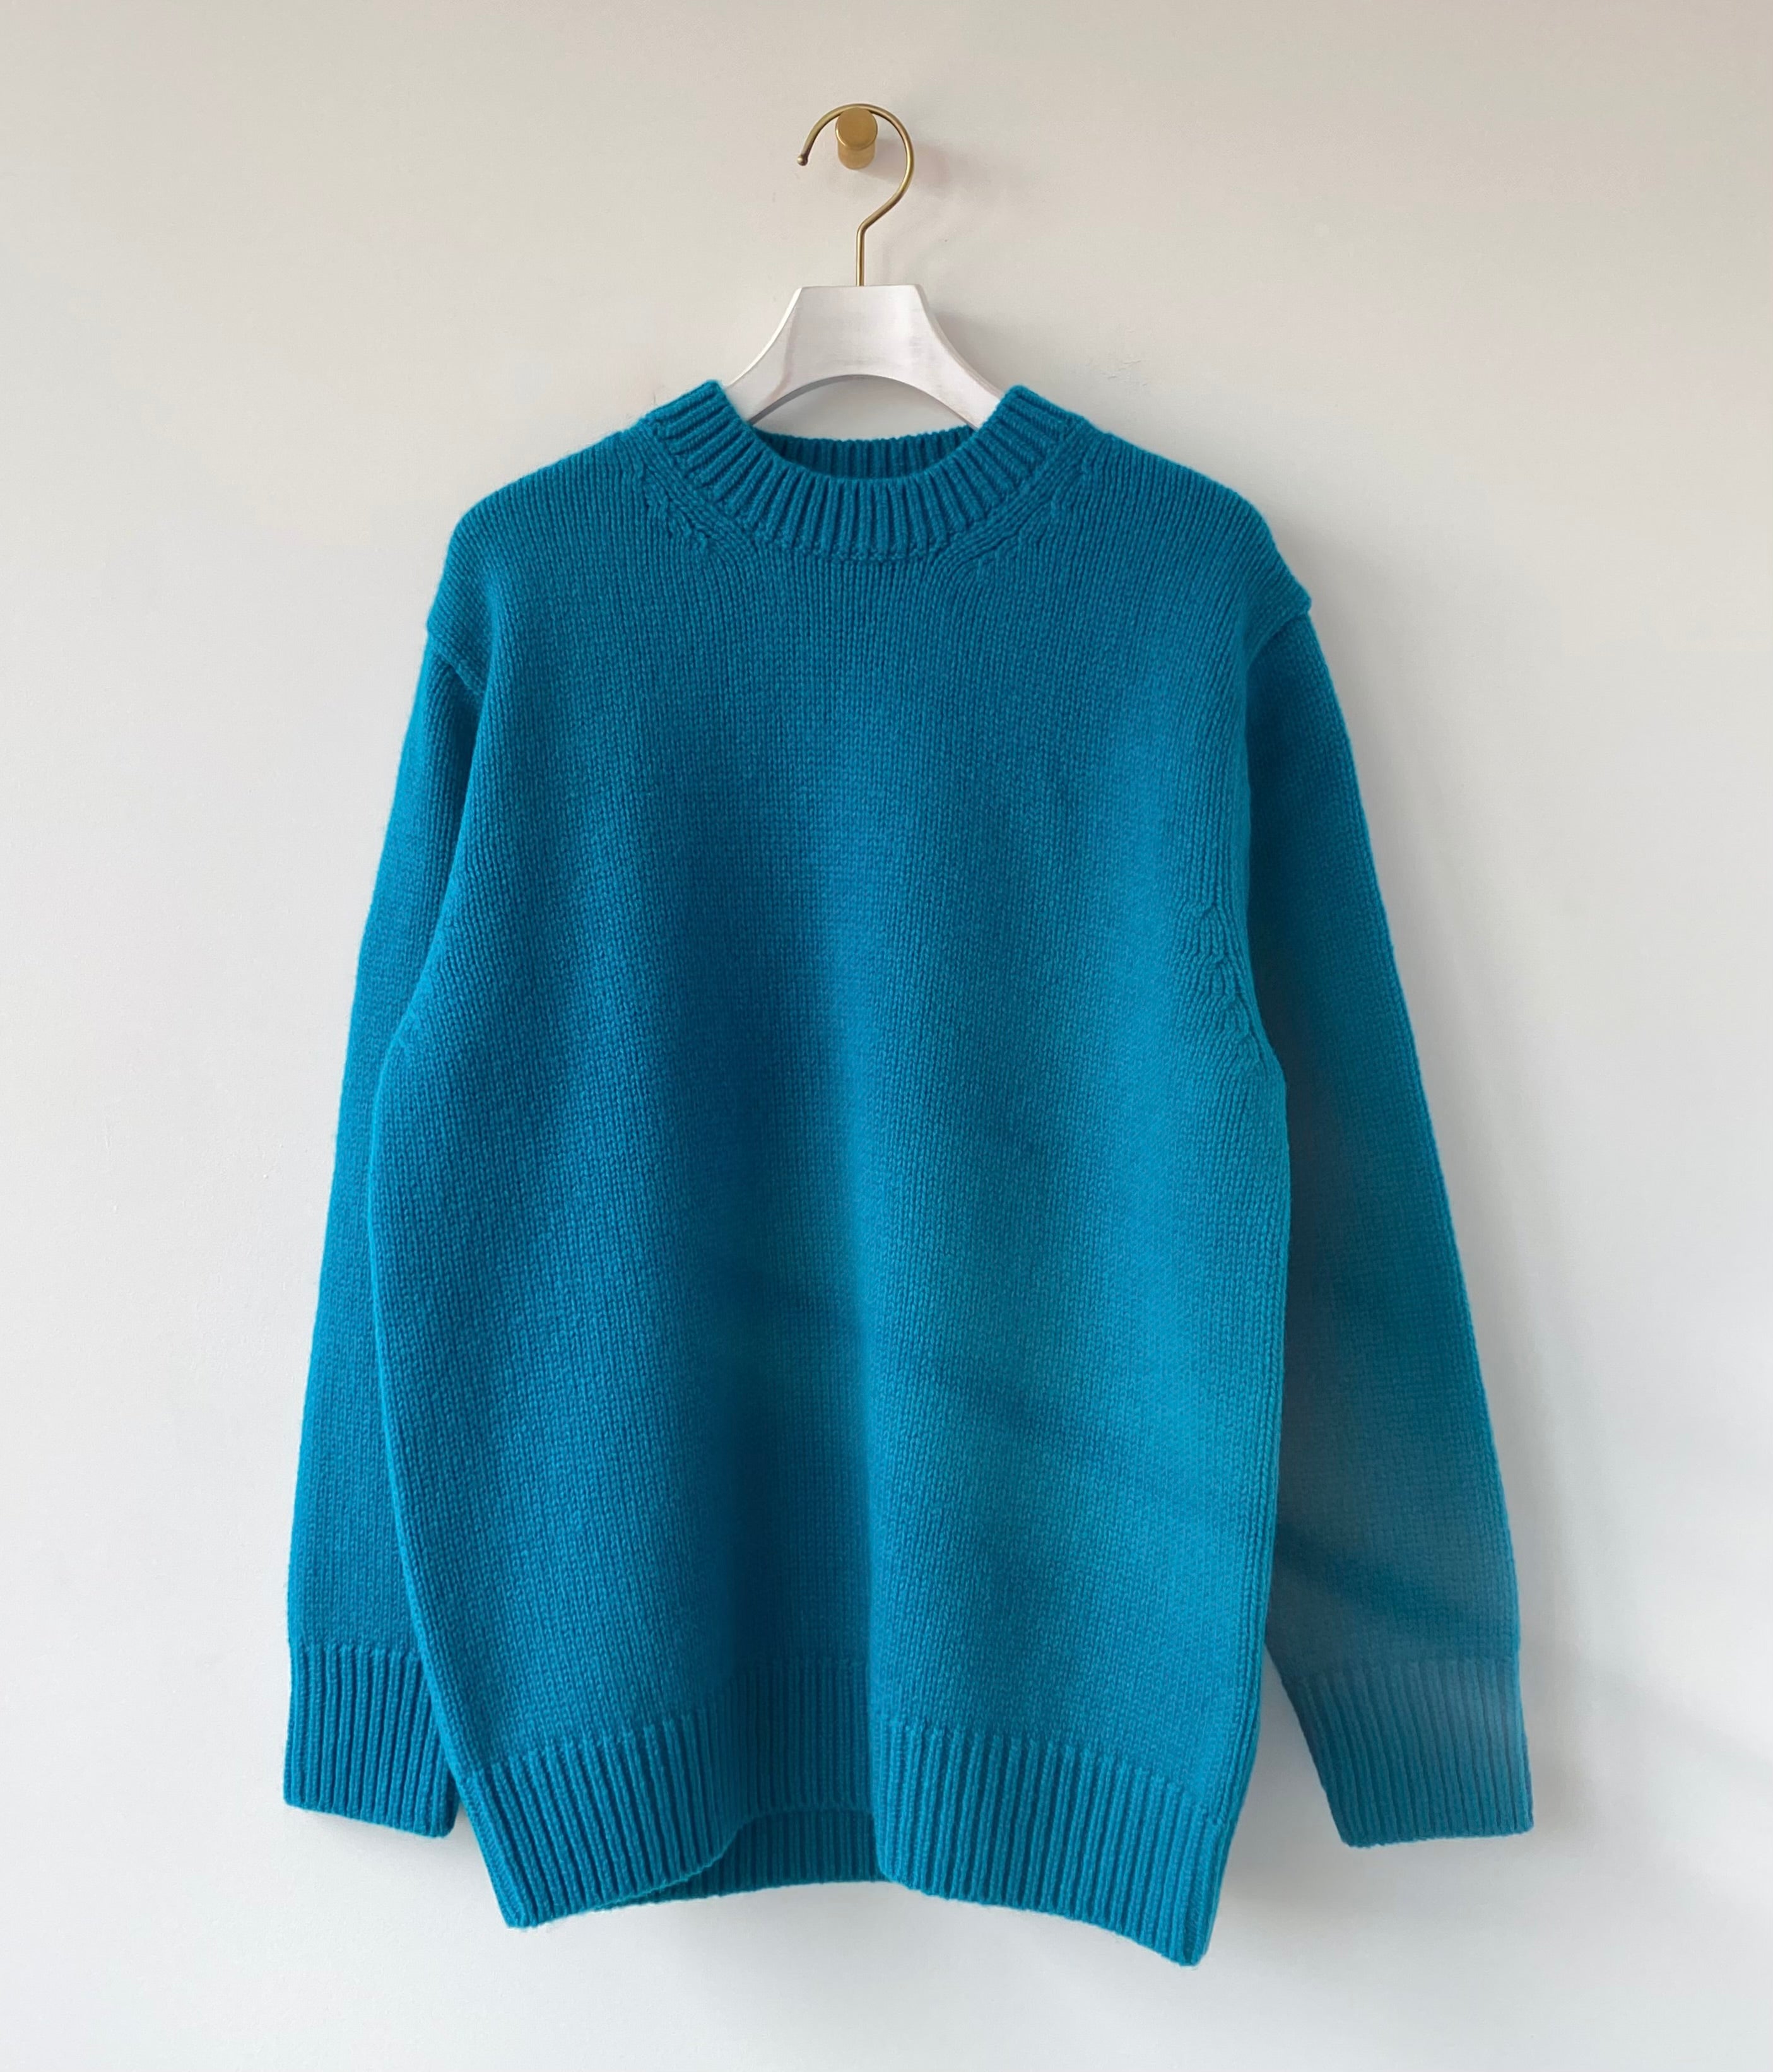 【即購入】新品Yonetomi Soft Lamb Wool Knit Cardigan トップス